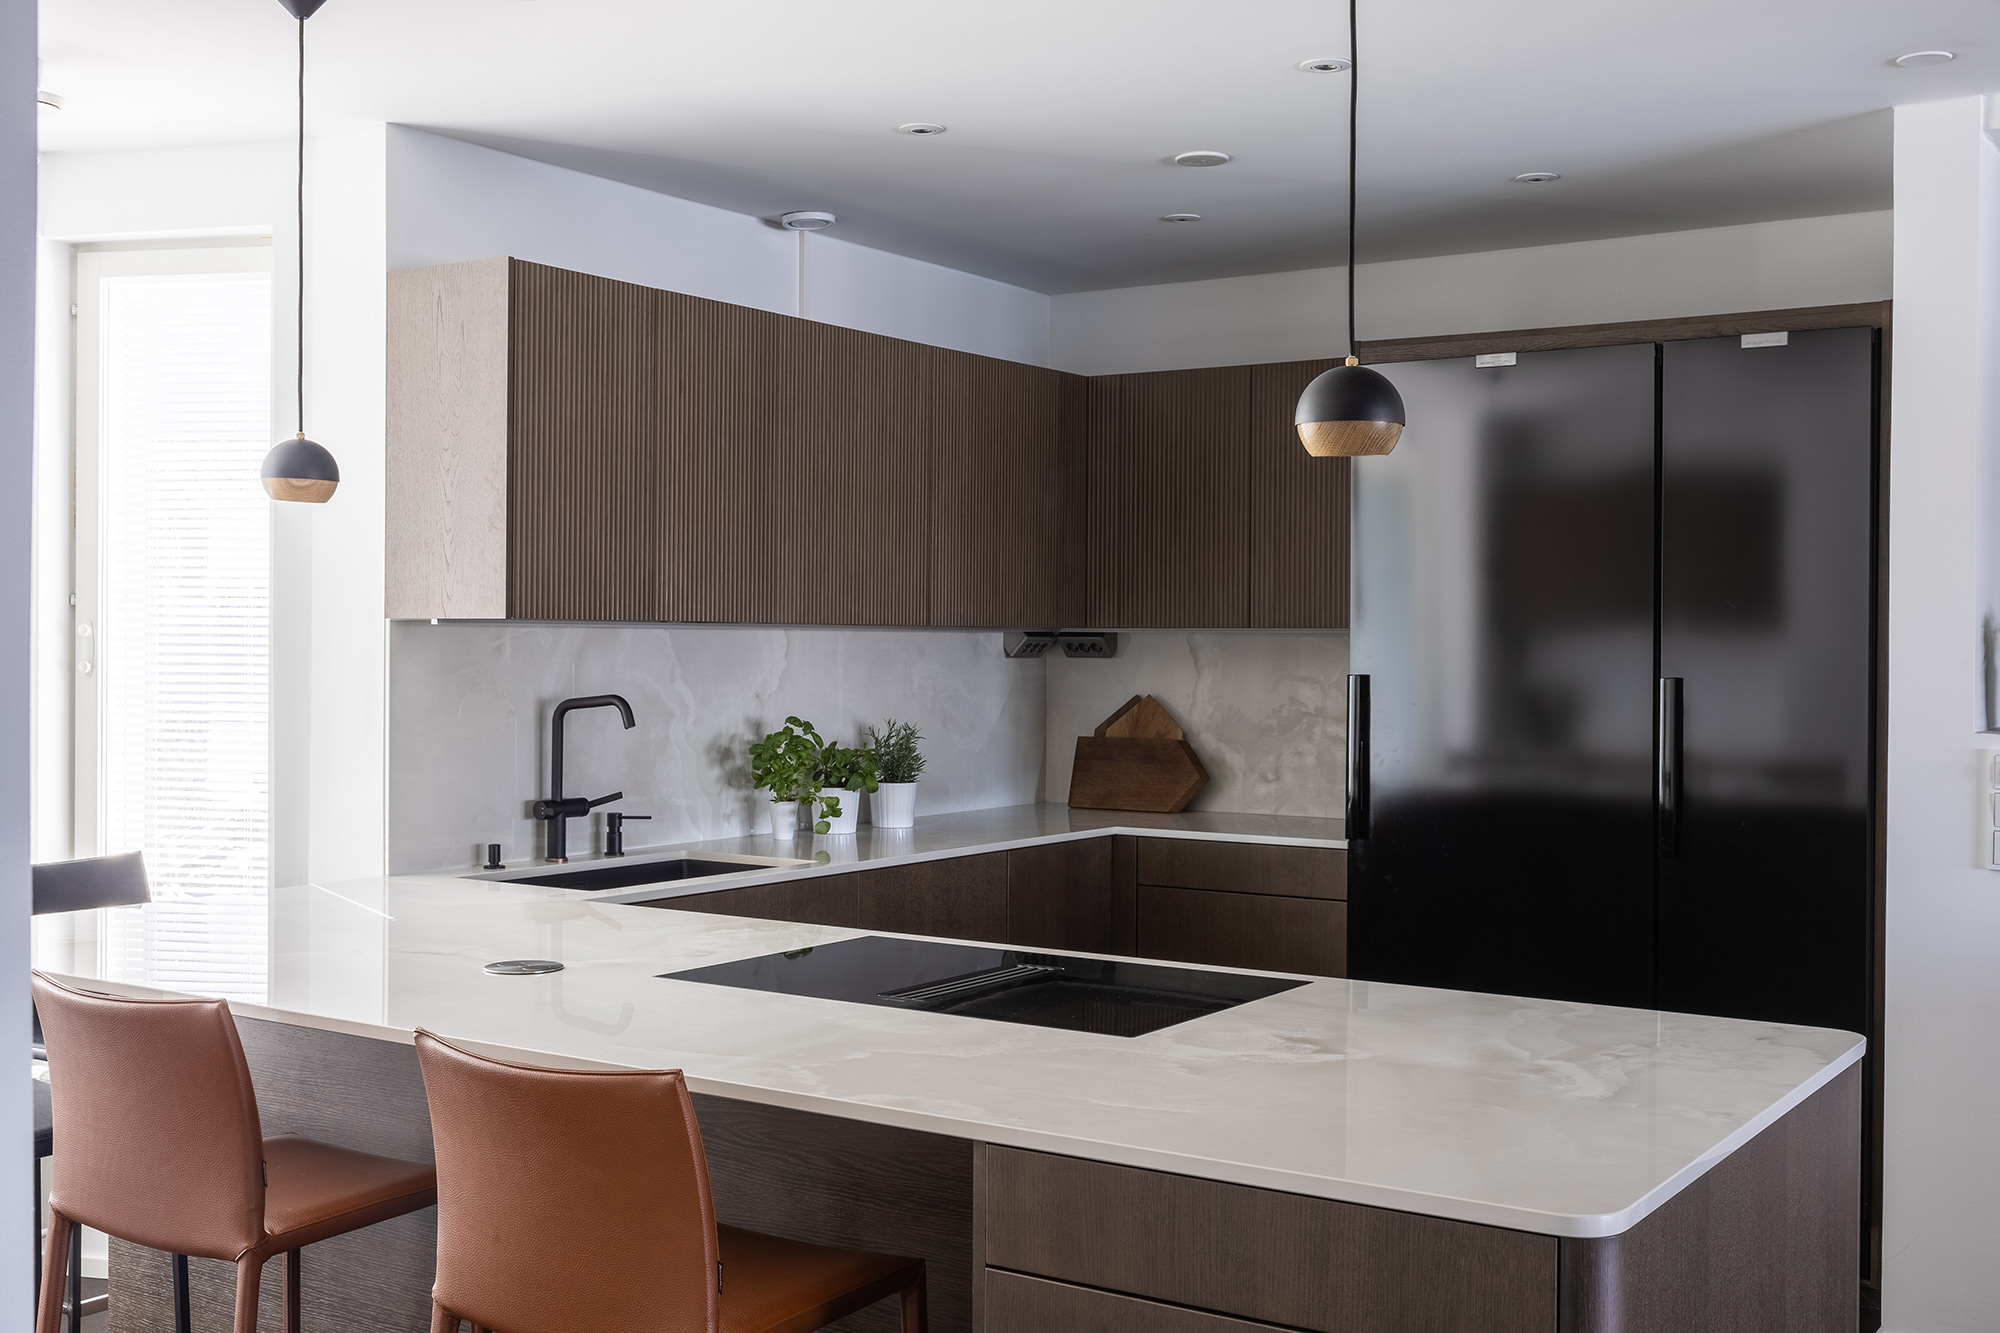 Image of Memmus home 21 in Dekton kitchen from Elon Bogården won Kitchen of the Year, Sweden - Cosentino